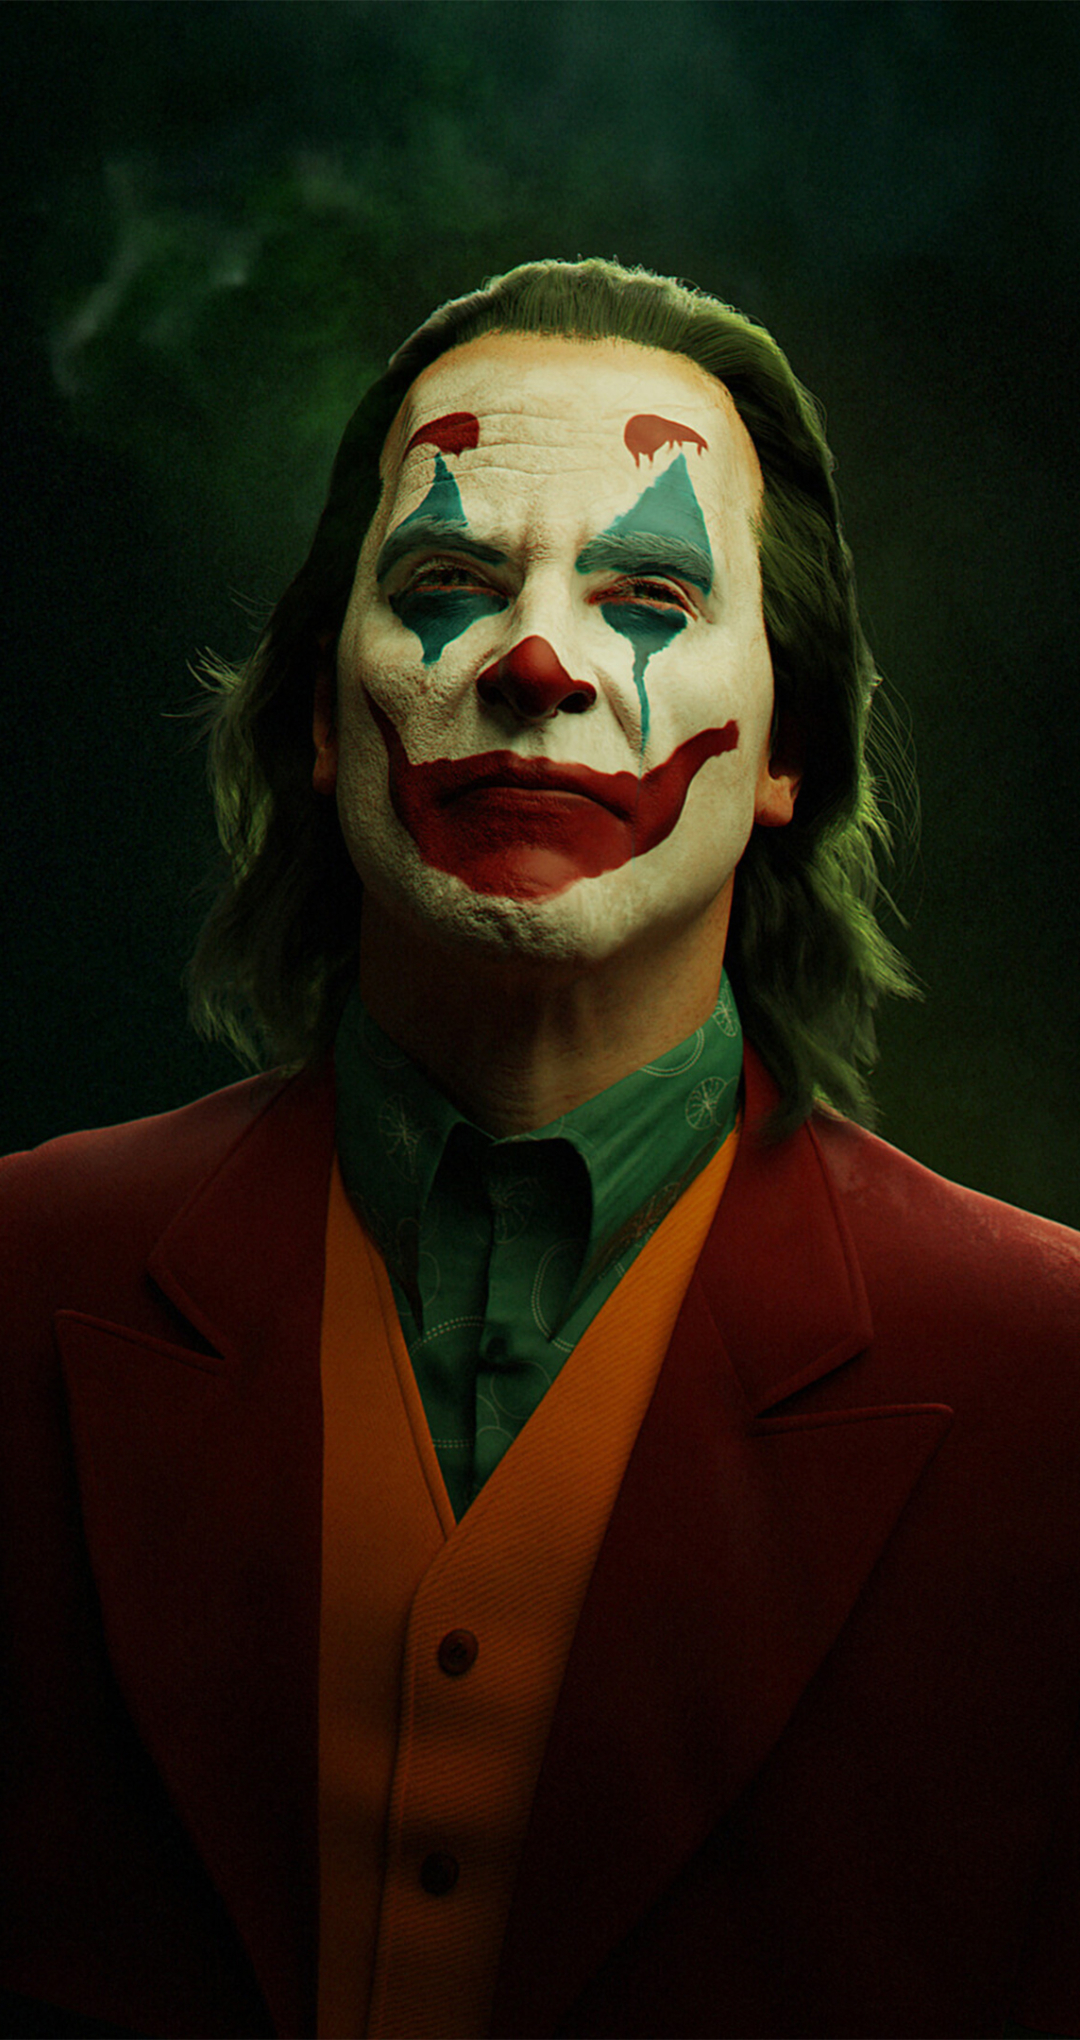 500 Joker Images  Download Free Pictures On Unsplash